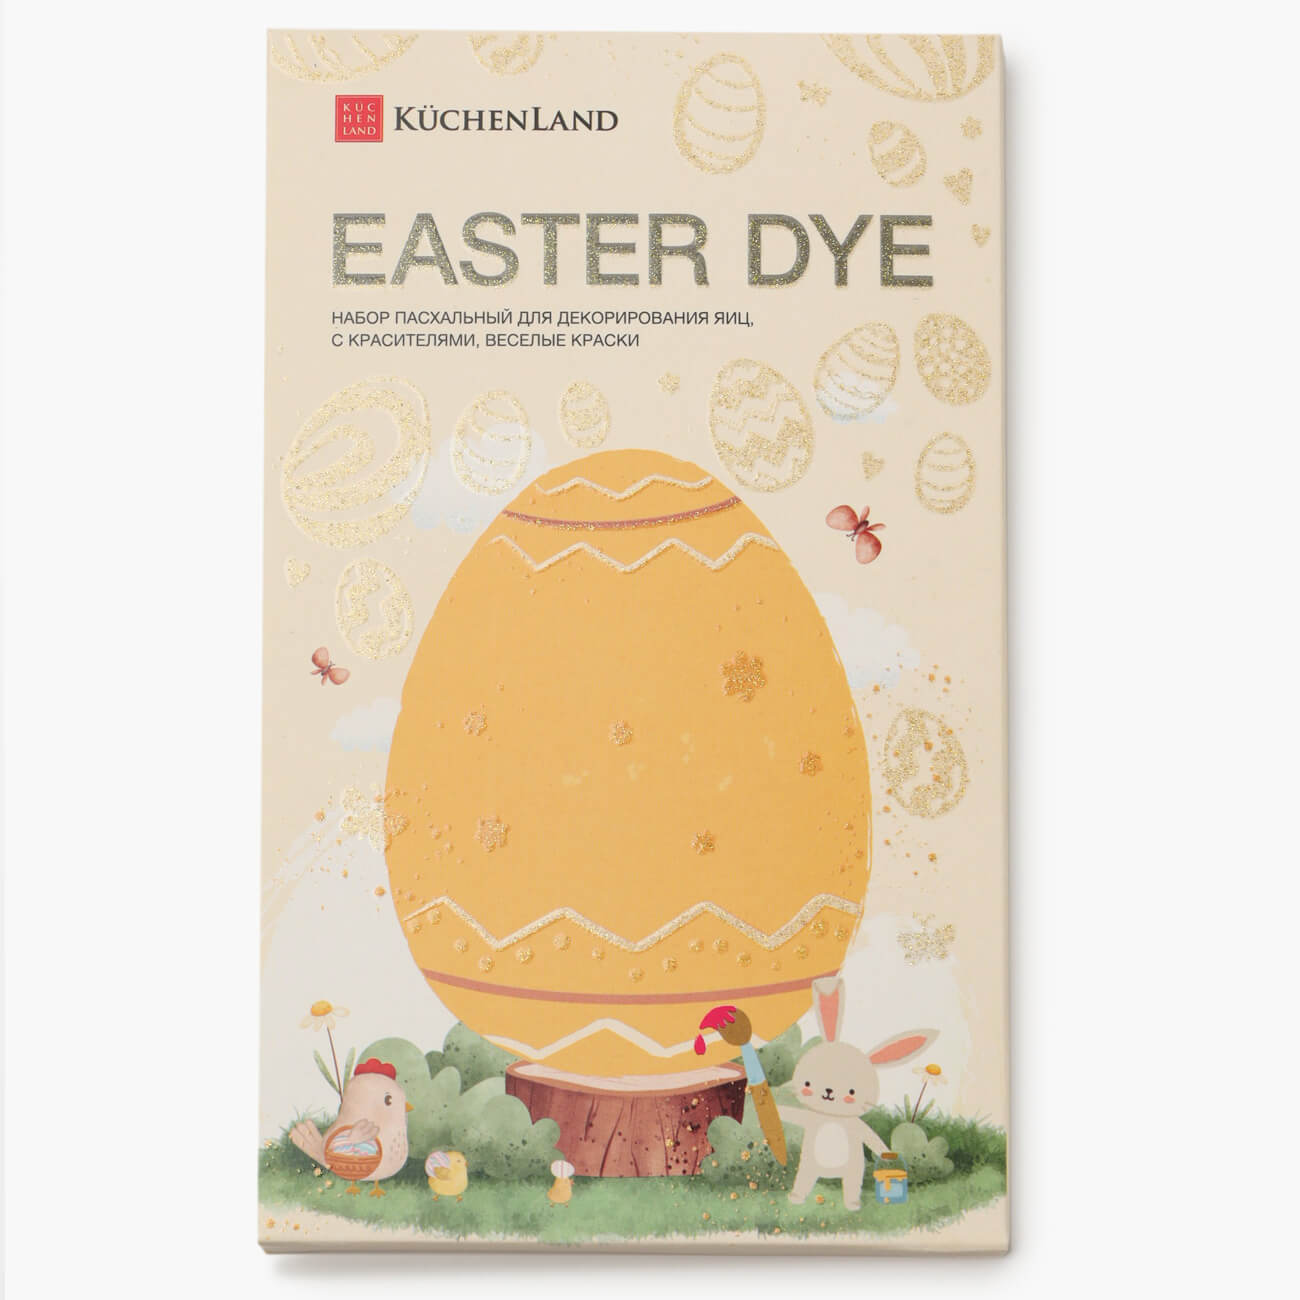 Набор пасхальный для декорирования яиц, 7 цветов/13 пр, Веселые краски, Easter dye набор для декорирования навеска 19 шт мультидом da8 161